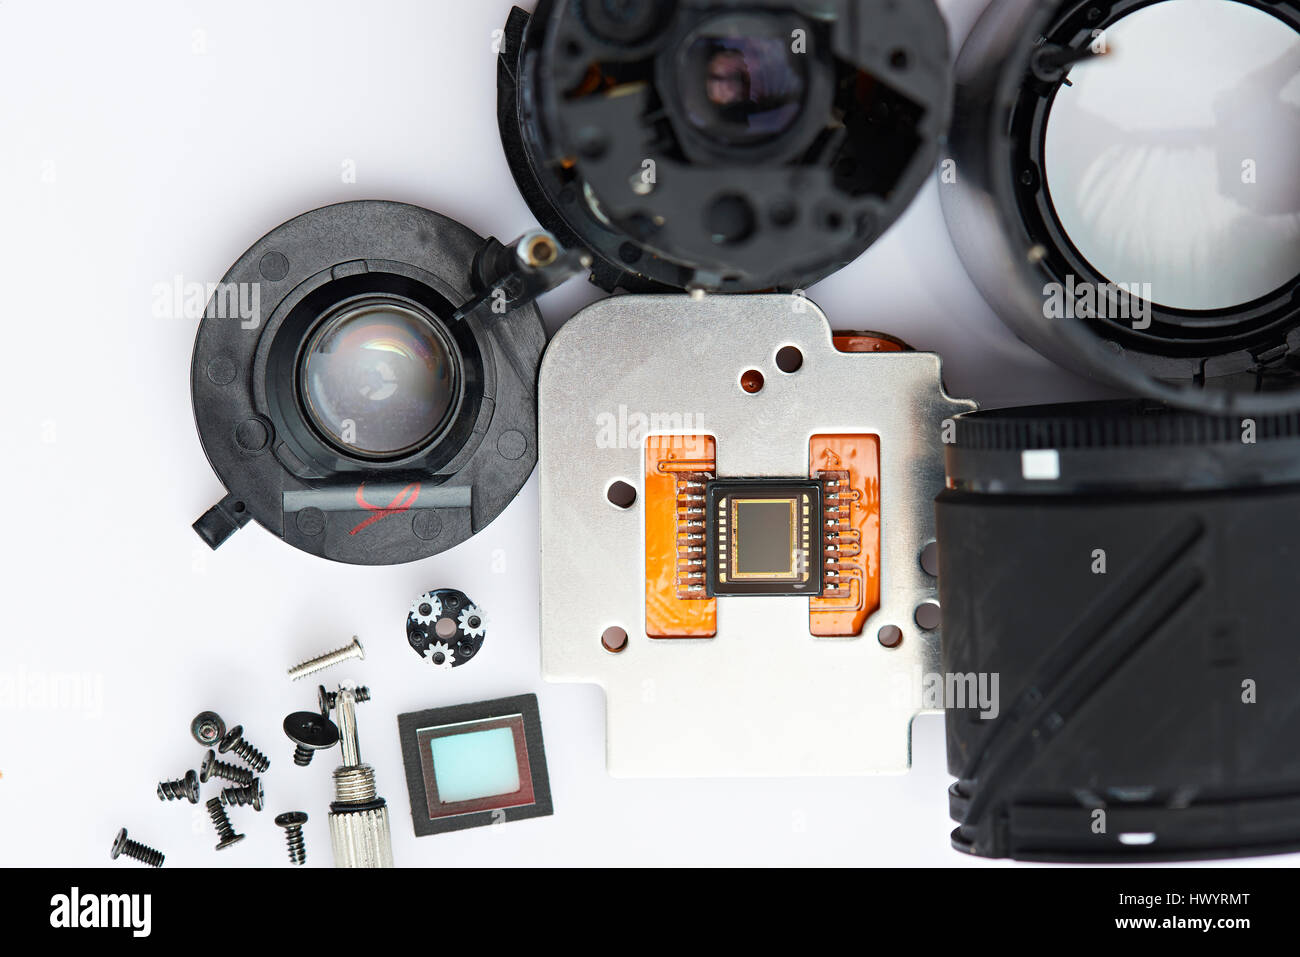 Digitalkamera-Elektronik auf weißen Tisch Blick von oben Stockfoto